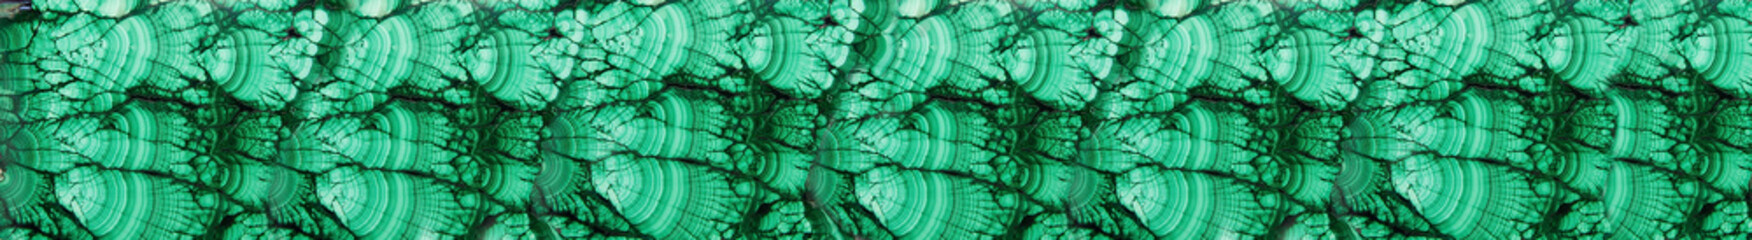 Malachite green mineral gemstone texture. Polished natural slab of green malachite mineral gemstone